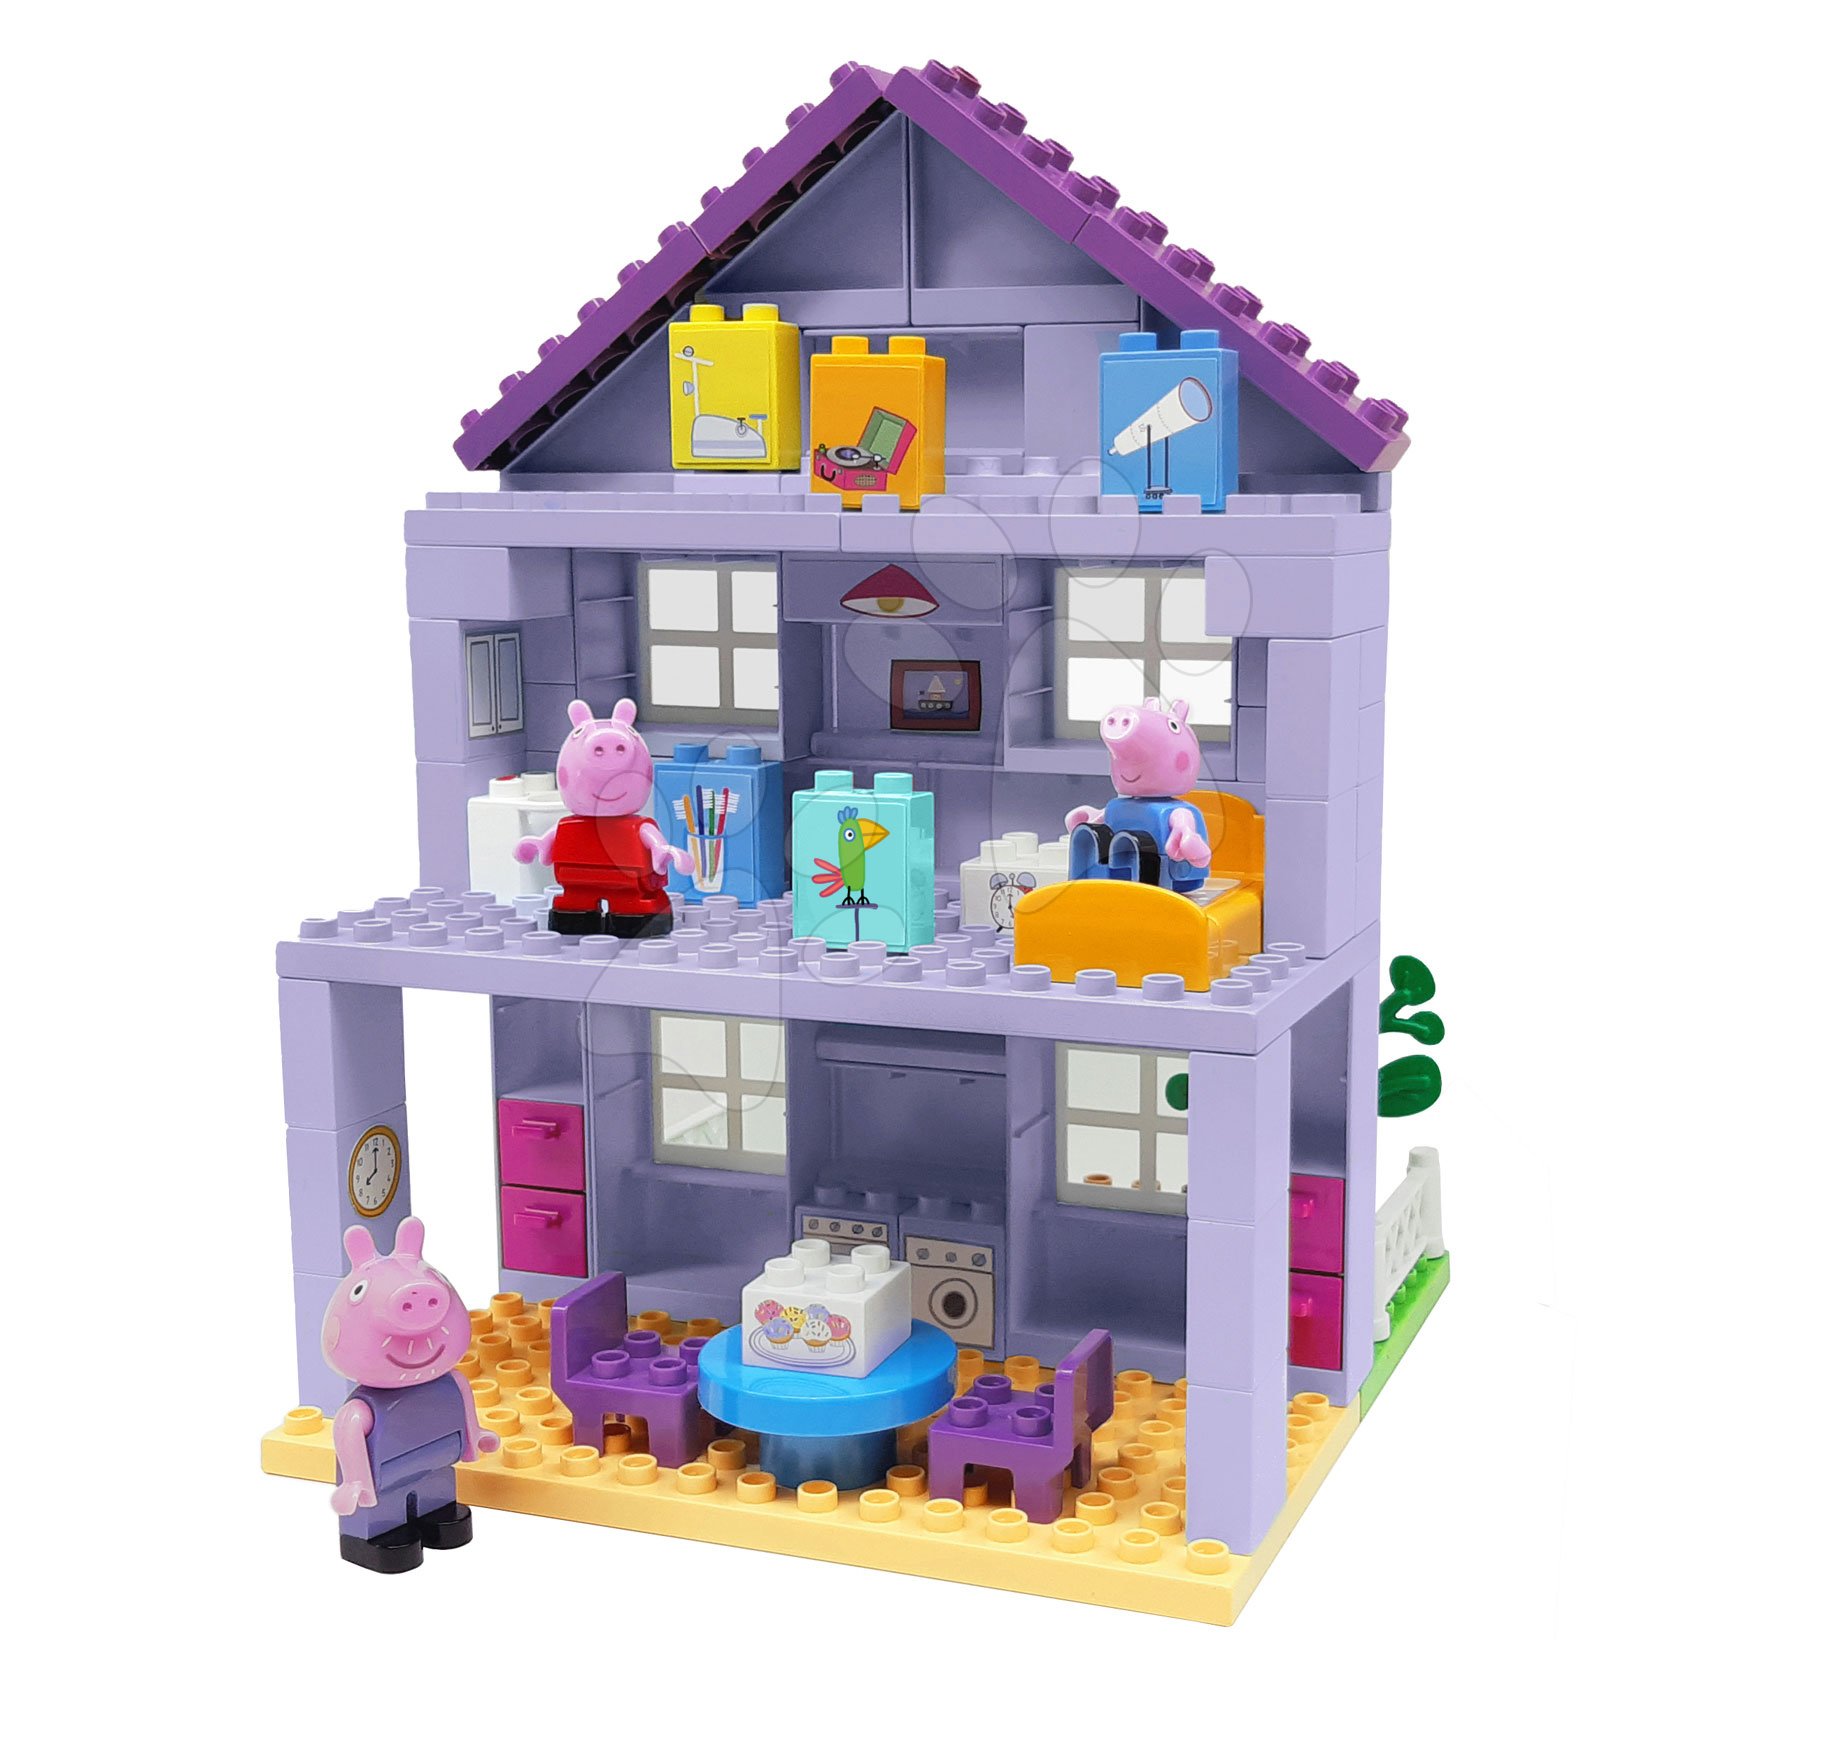 Építőjátékok BIG-Bloxx mint lego - Épitőjáték Peppa Pig Grandparents House PlayBIG Bloxx nagyszülők háza 3 figurával 18 hó-tól